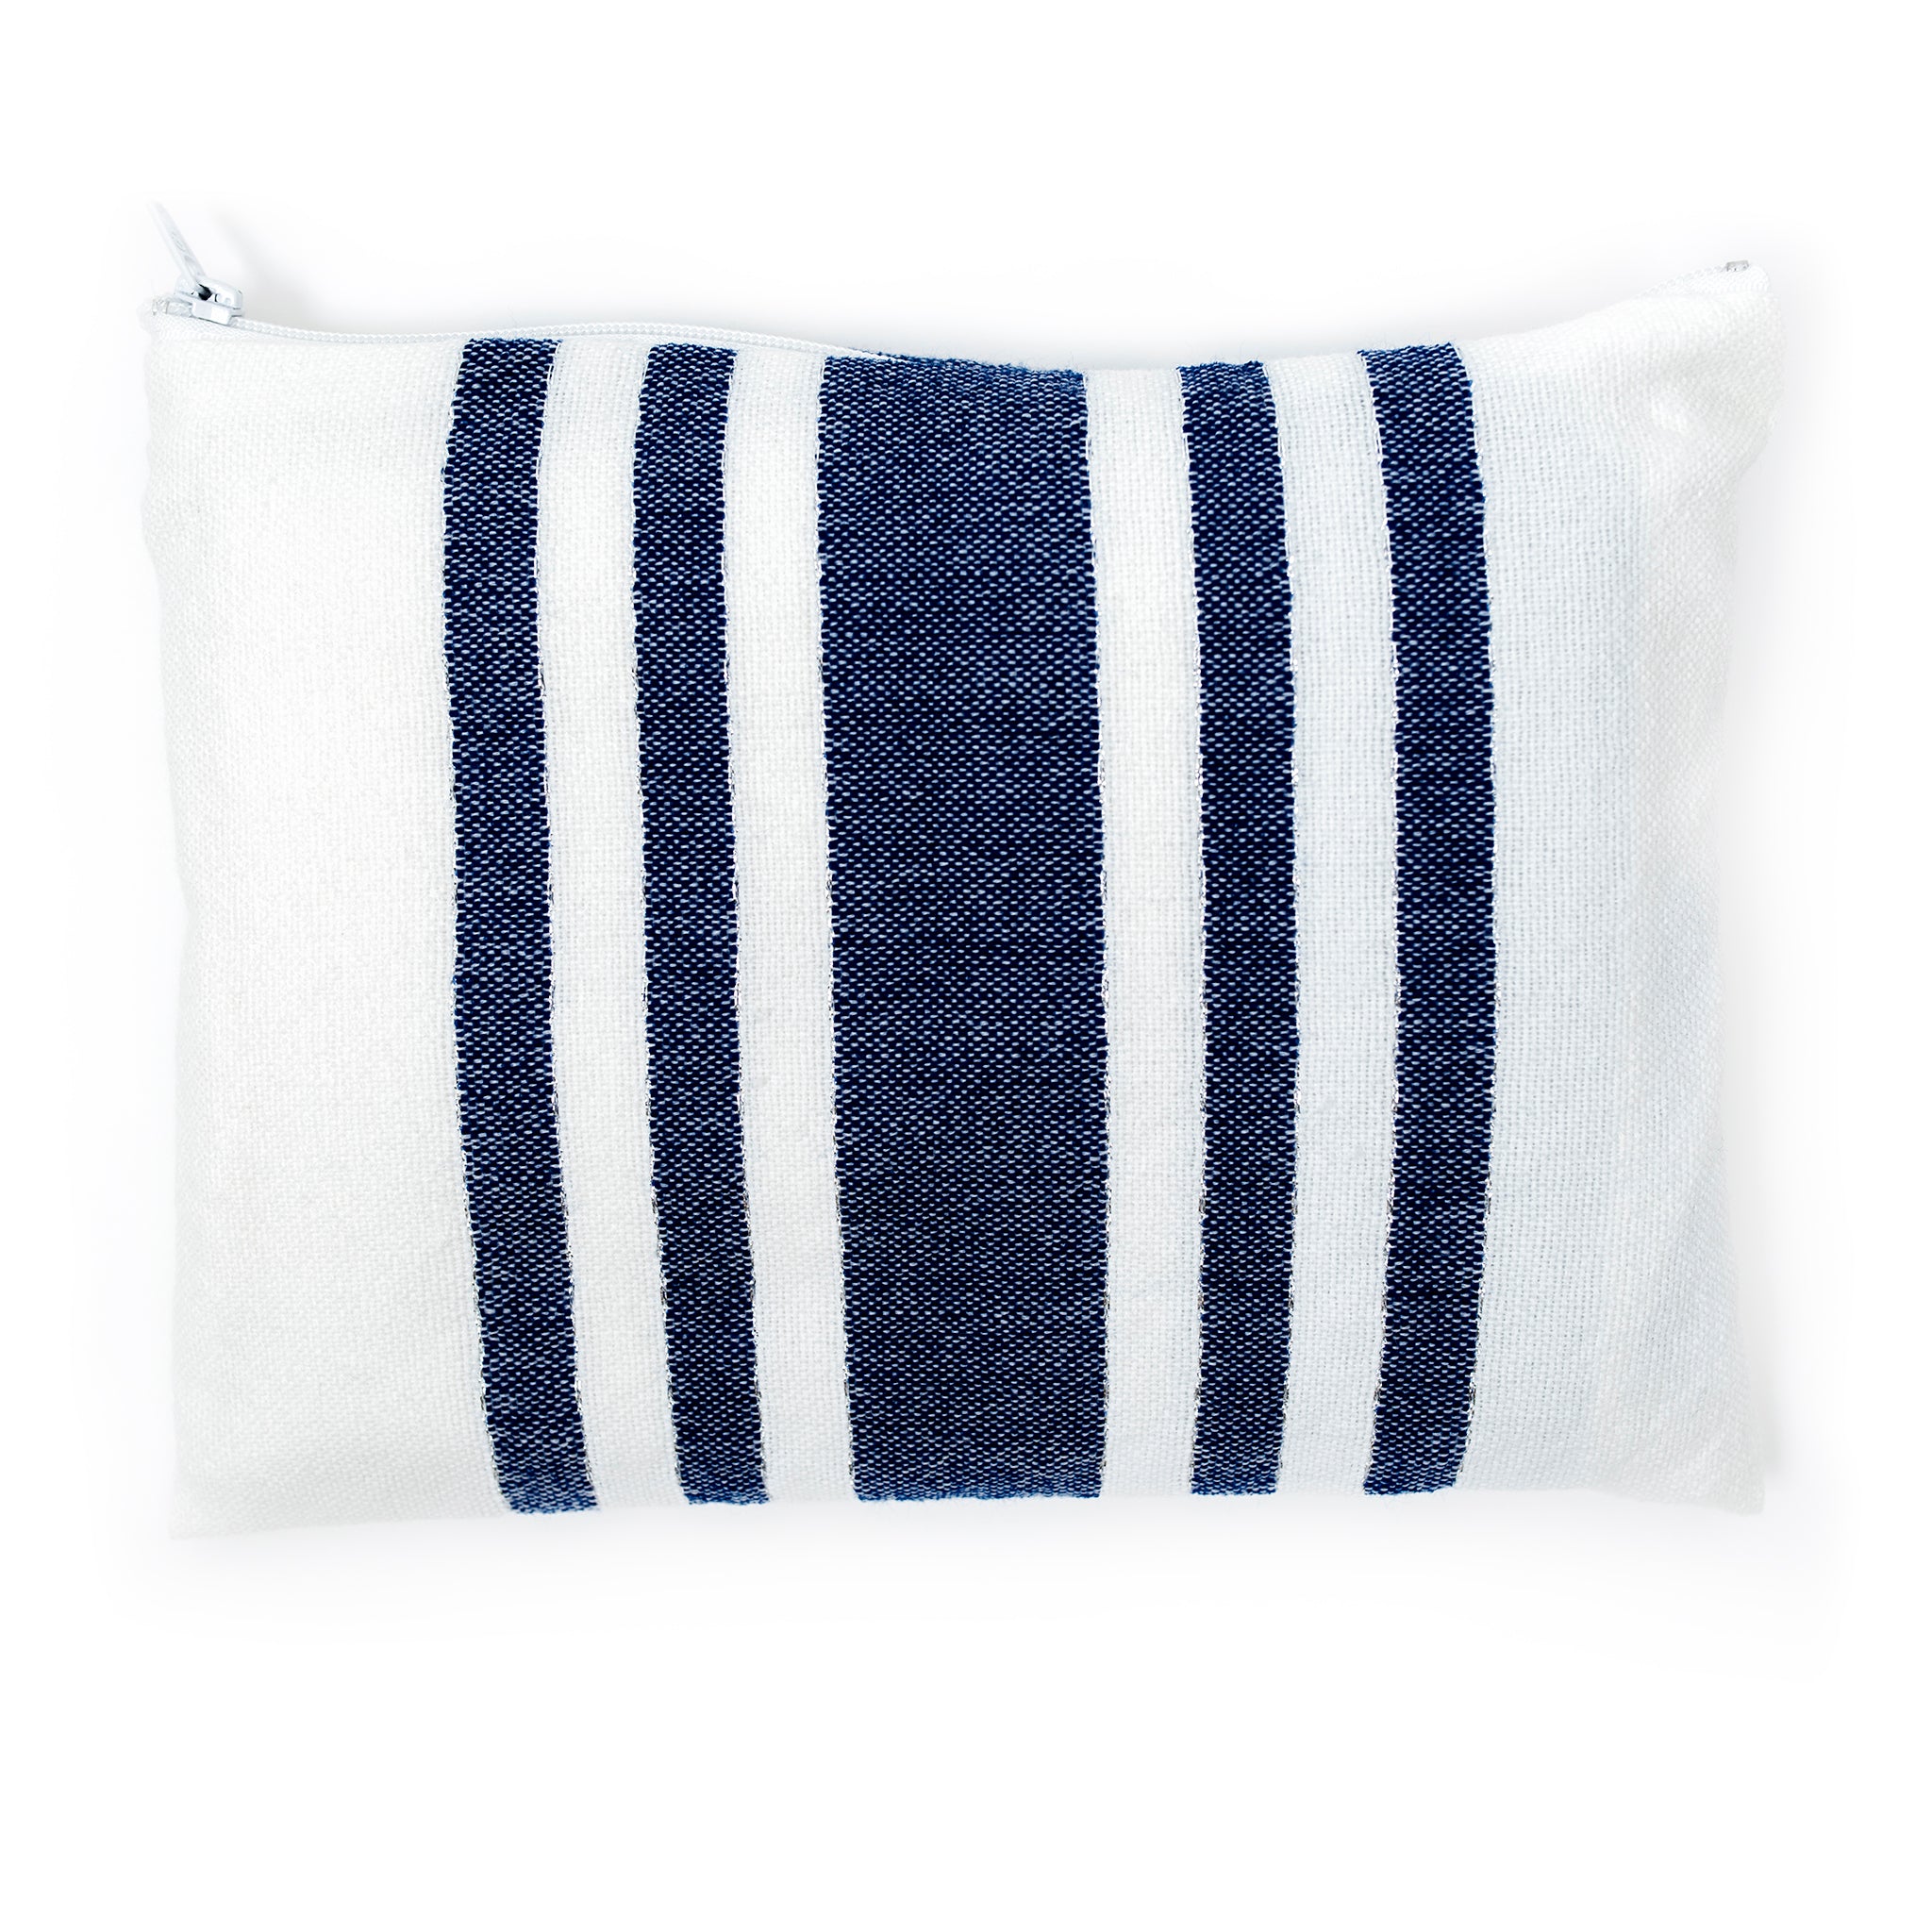 David - Wool Tallit - Blue on White